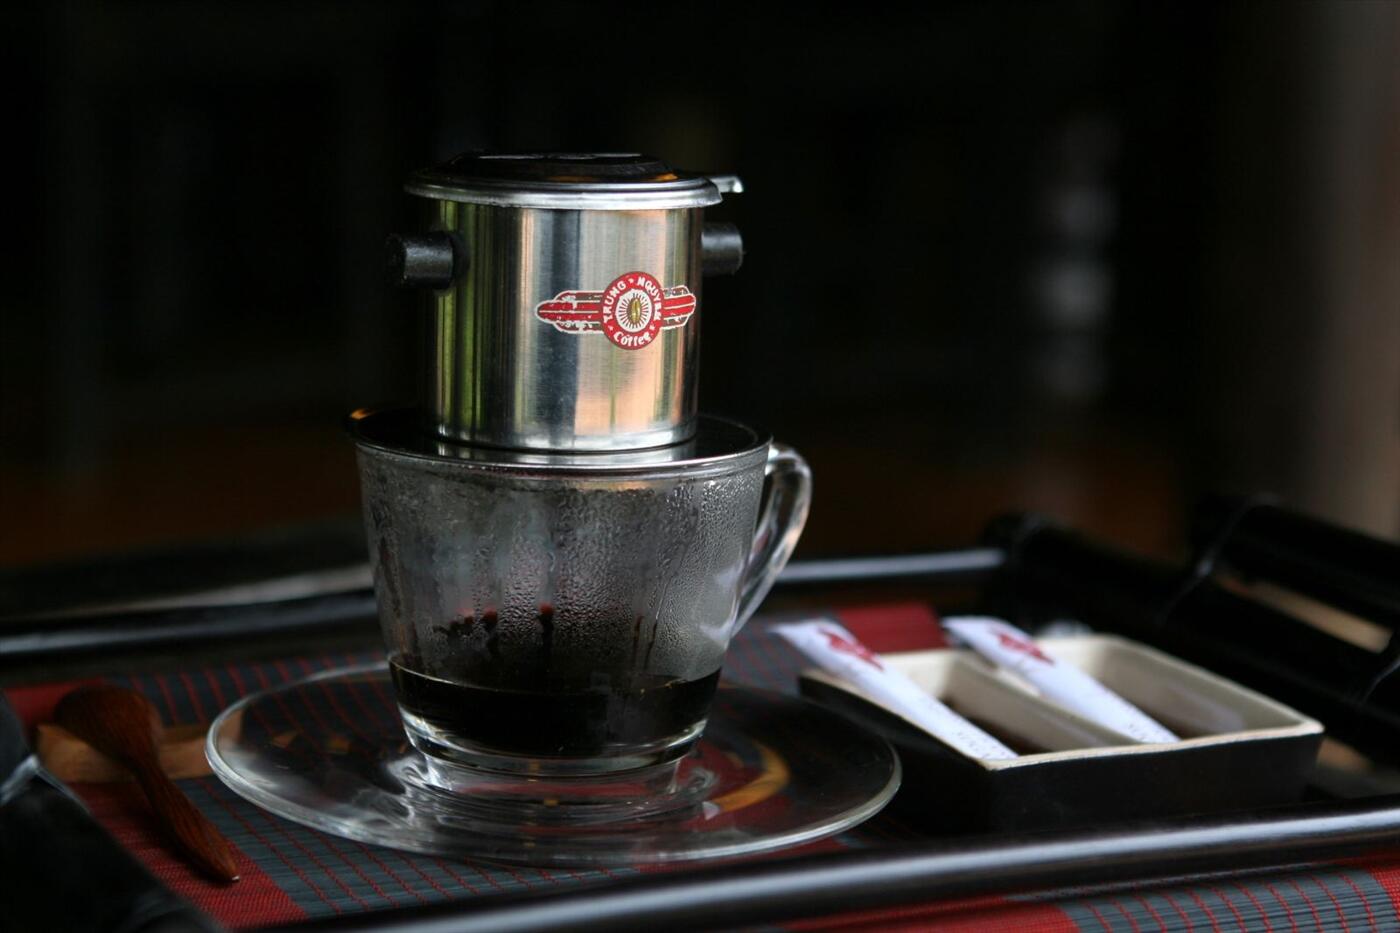 Sự kết hợp tinh tế giữa hạt cà phê rang xay và nước nóng thật kỹ lưỡng đã tạo ra một ly pha cà phê thơm ngon đúng vị của đất nước. Hãy cùng chiêm ngưỡng hình ảnh pha cà phê đậm đà này và đắm chìm trong cảm giác thưởng thức tuyệt vời của một tách cà phê.